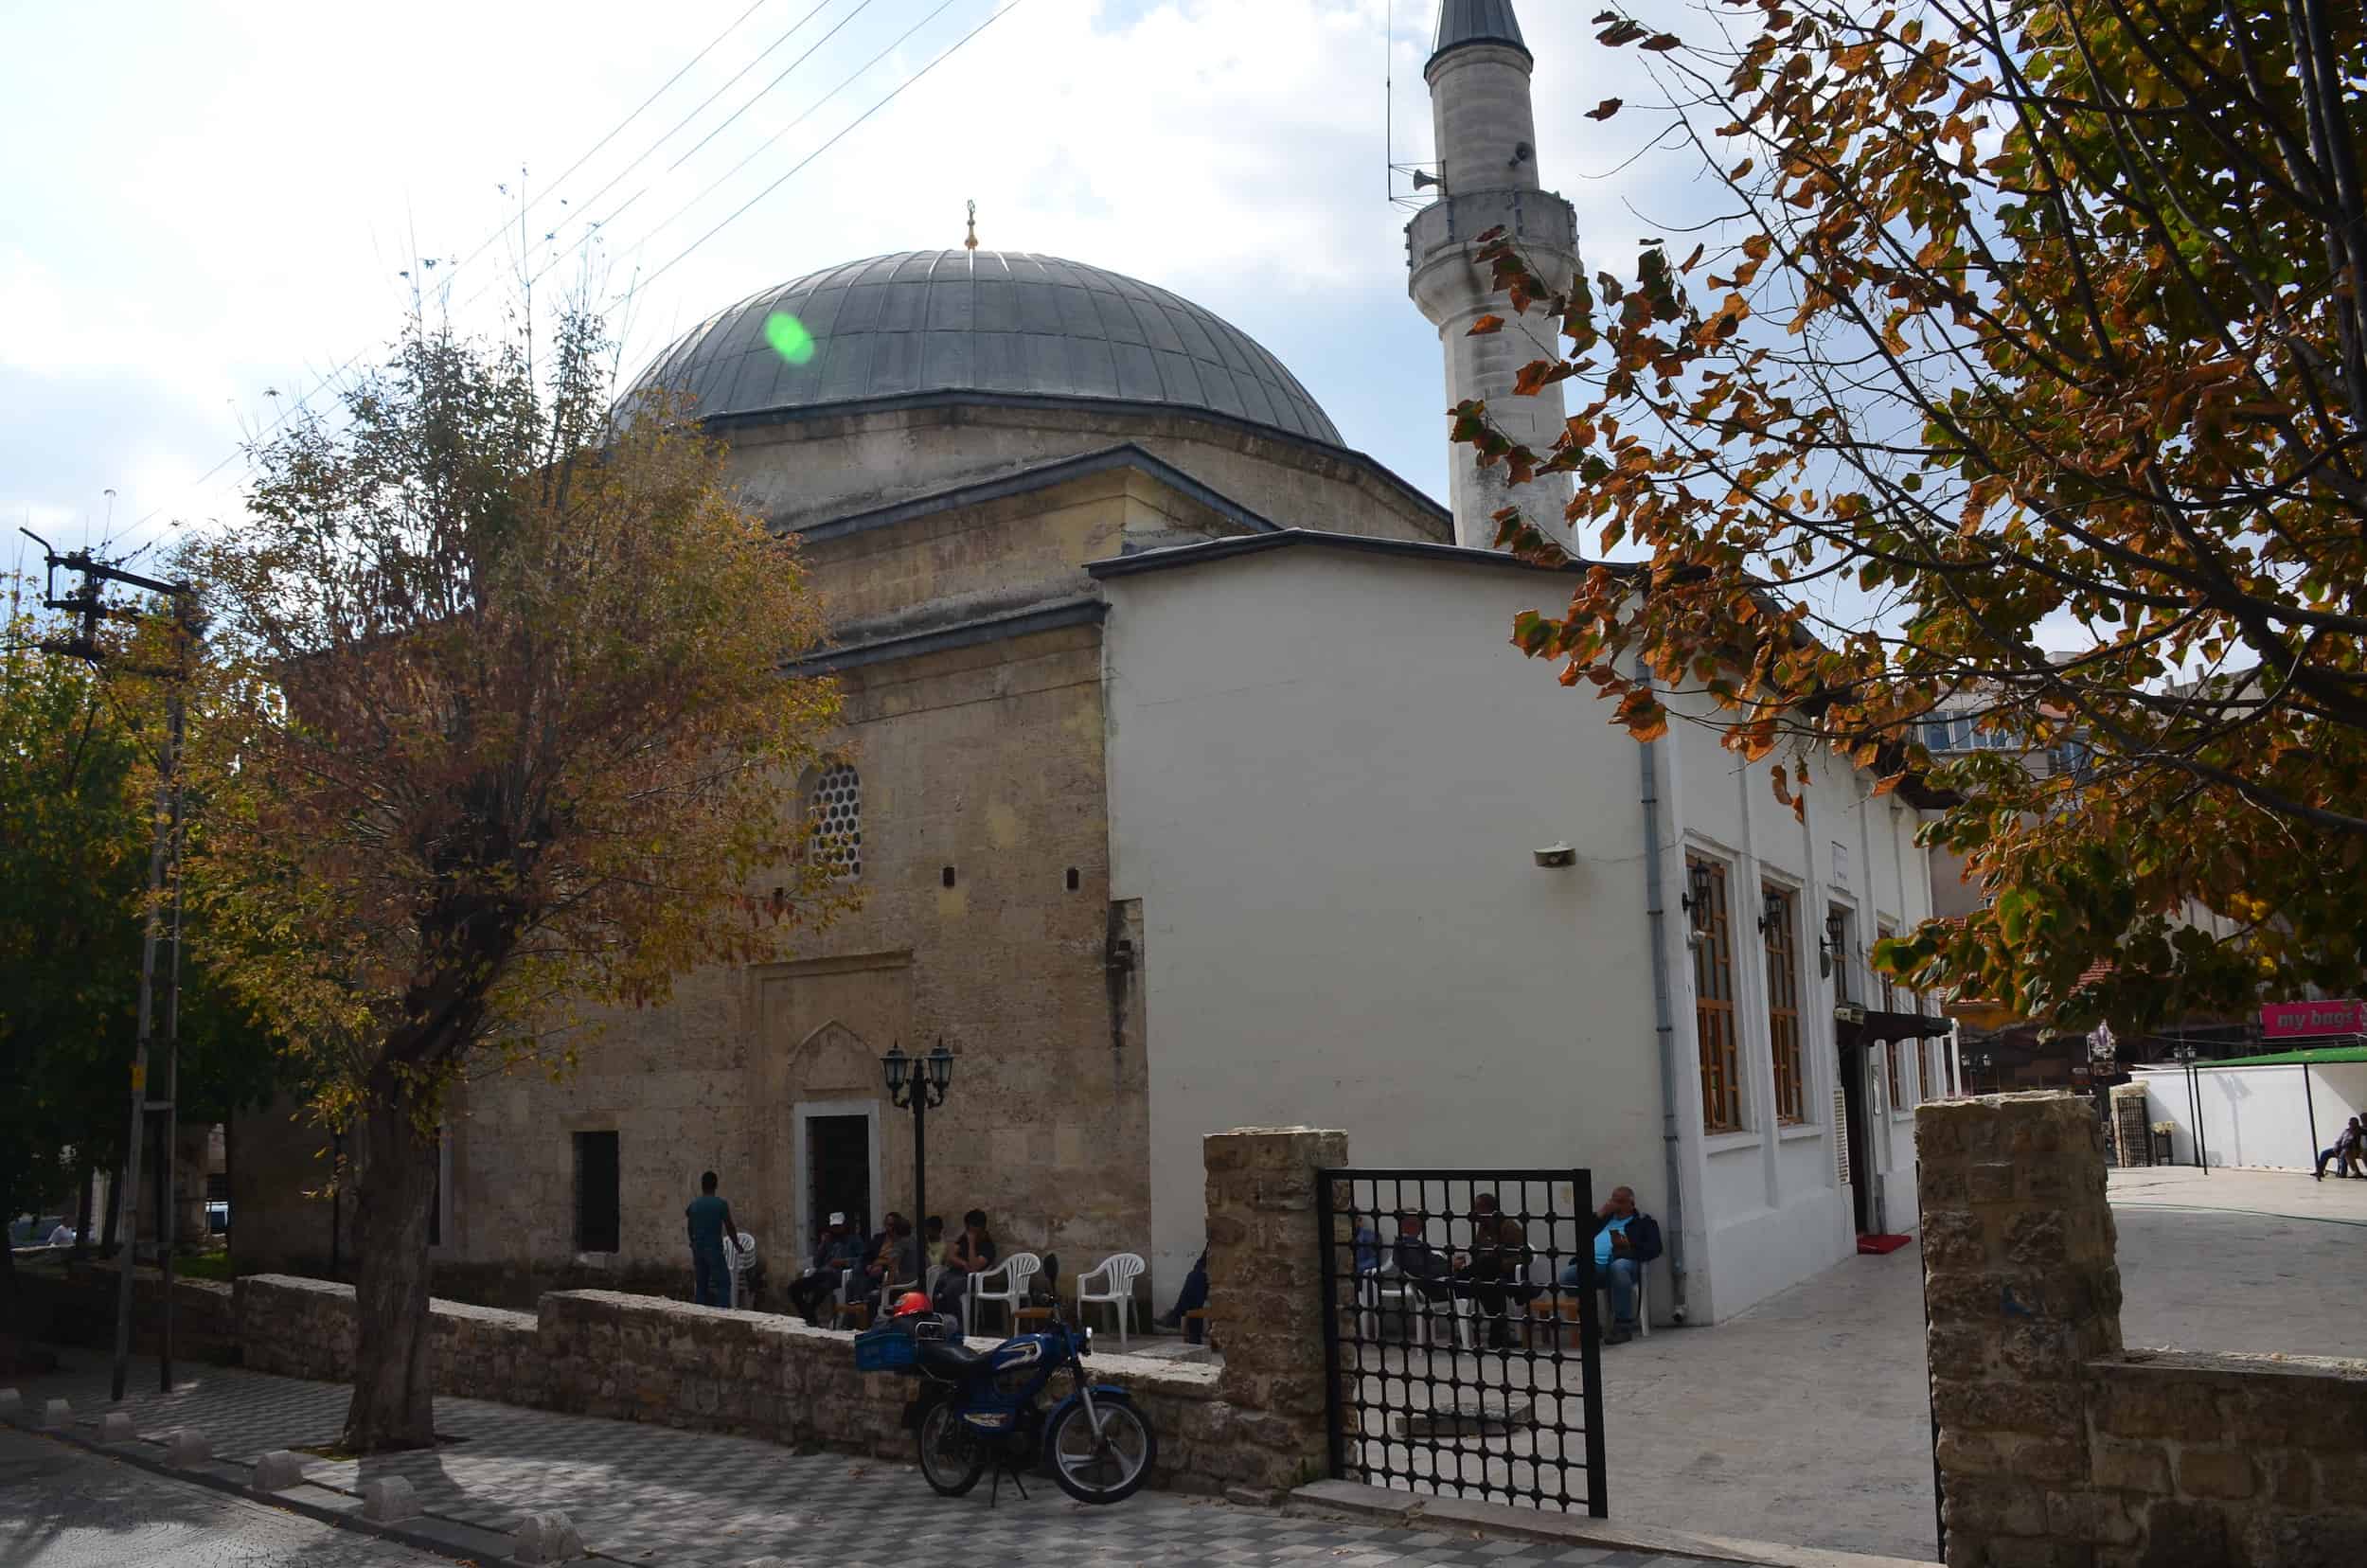 Hızırbey Mosque in Kırklareli, Turkey